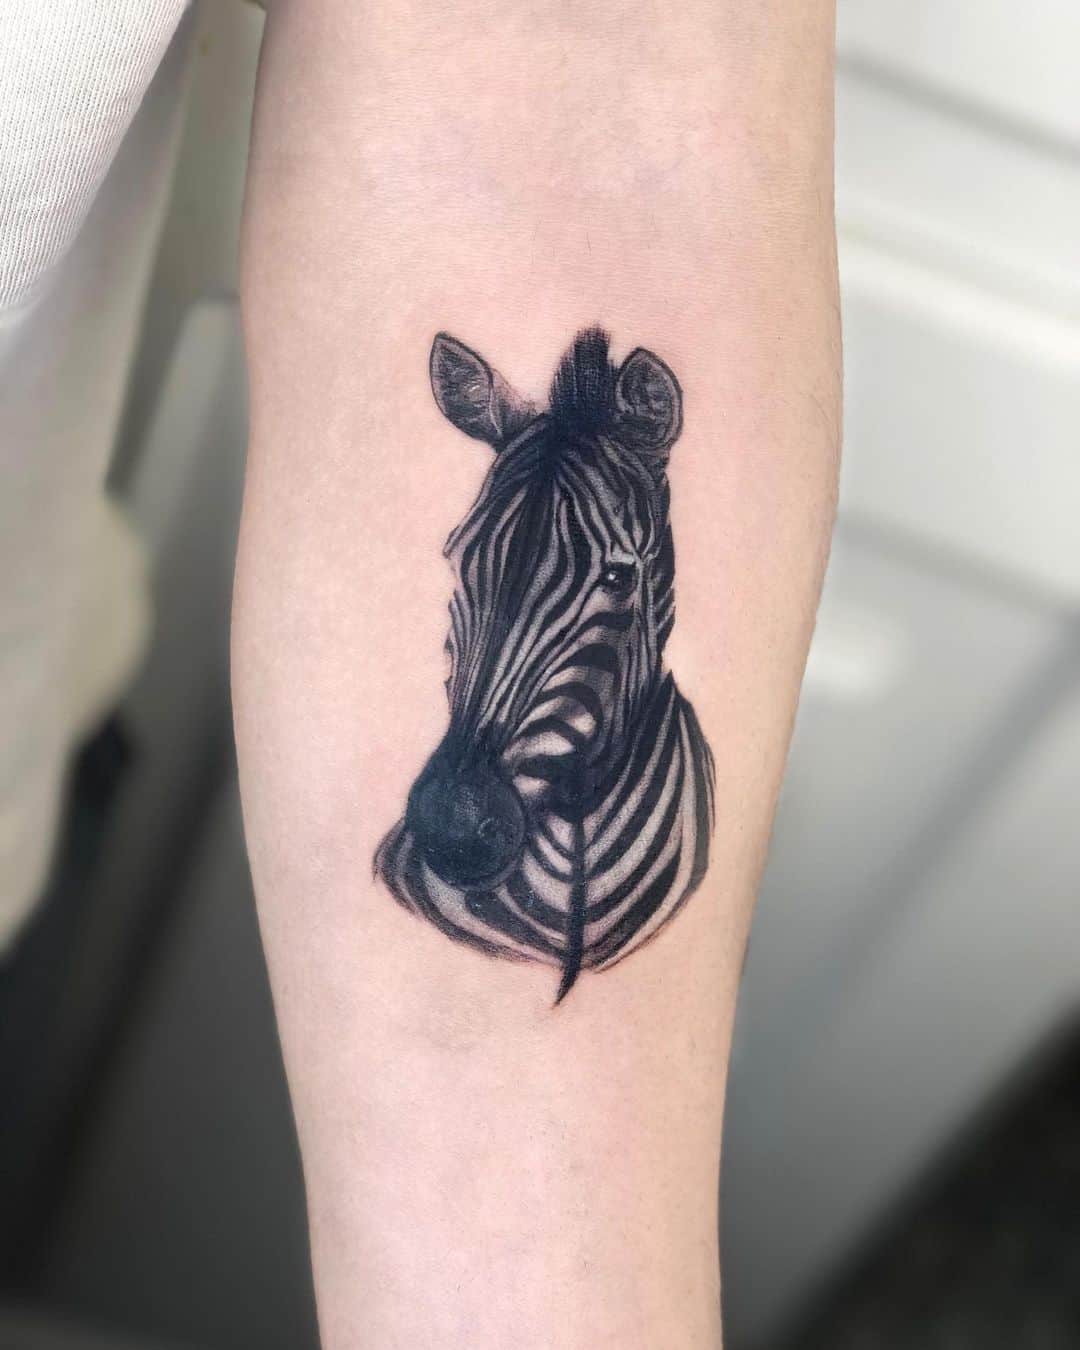 Zebra tattoo by melikeylldiz